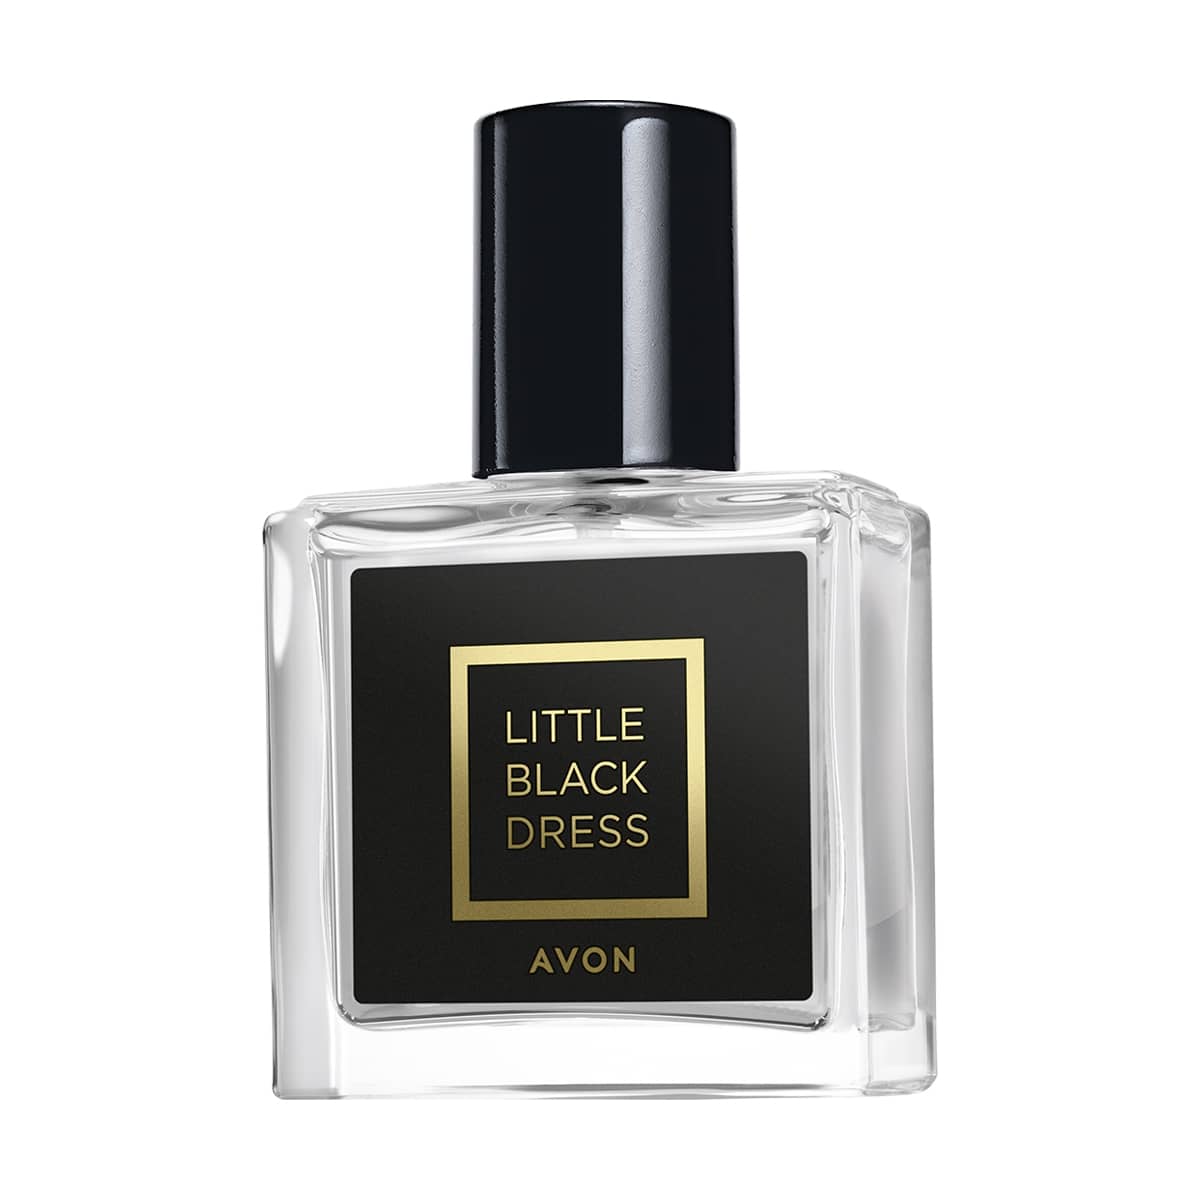 Little Black Dress Eau de Parfum Travel Size 30ml